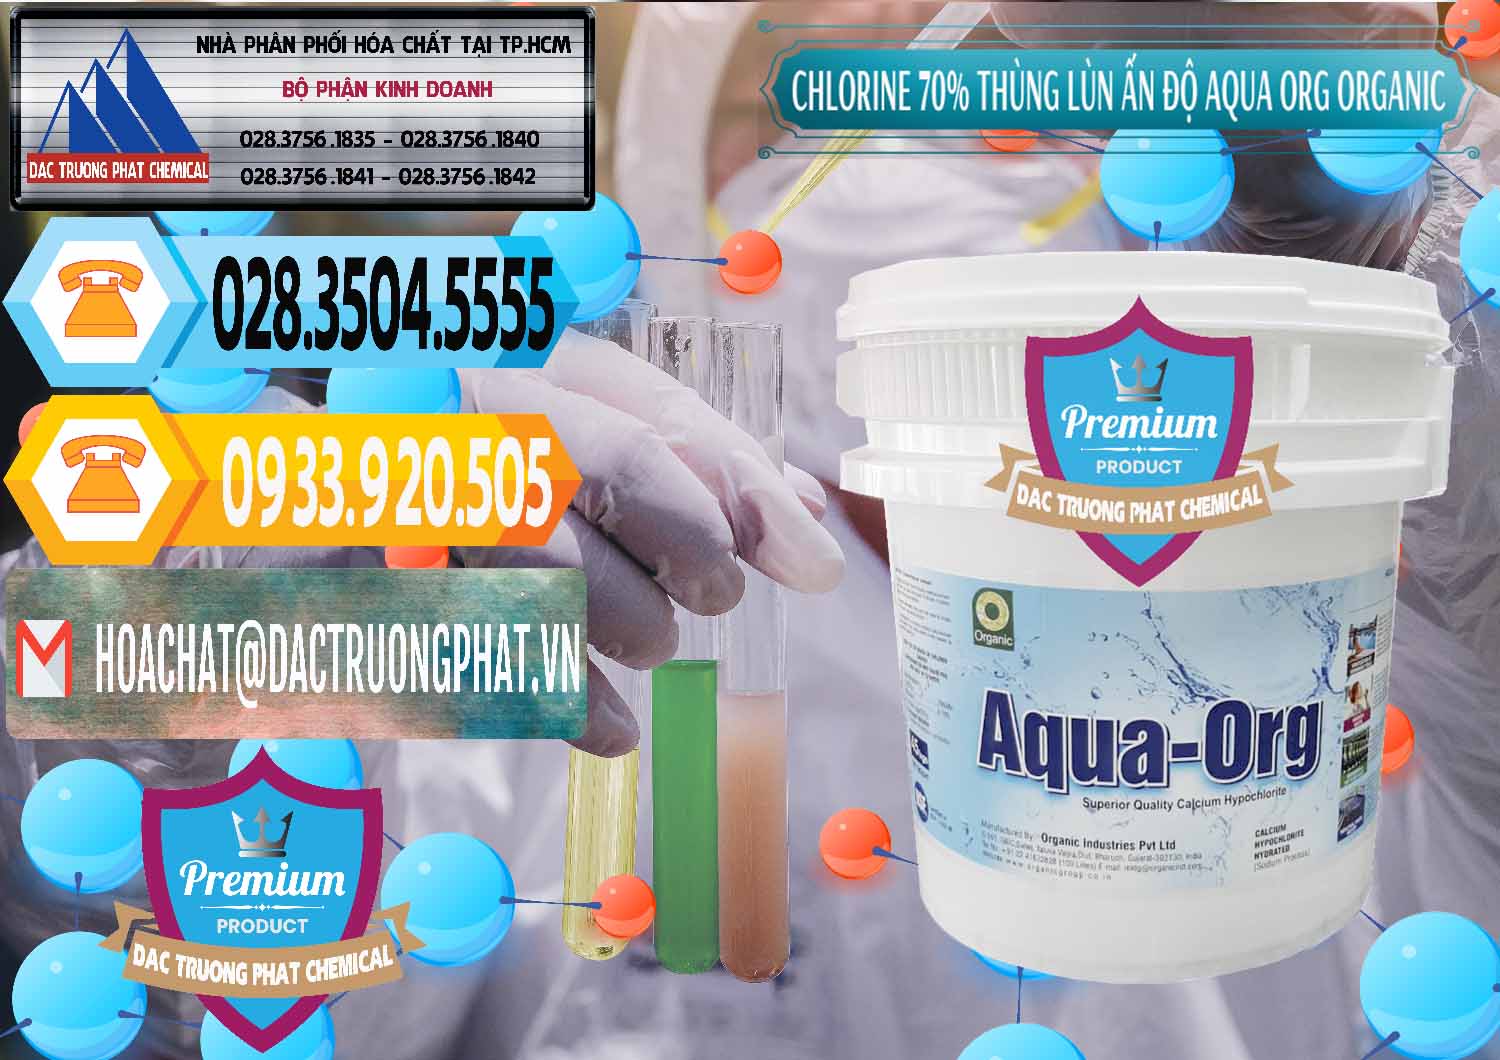 Chuyên phân phối & bán Chlorine – Clorin 70% Thùng Lùn Ấn Độ Aqua ORG Organic India - 0212 - Chuyên phân phối & bán hóa chất tại TP.HCM - hoachattayrua.net